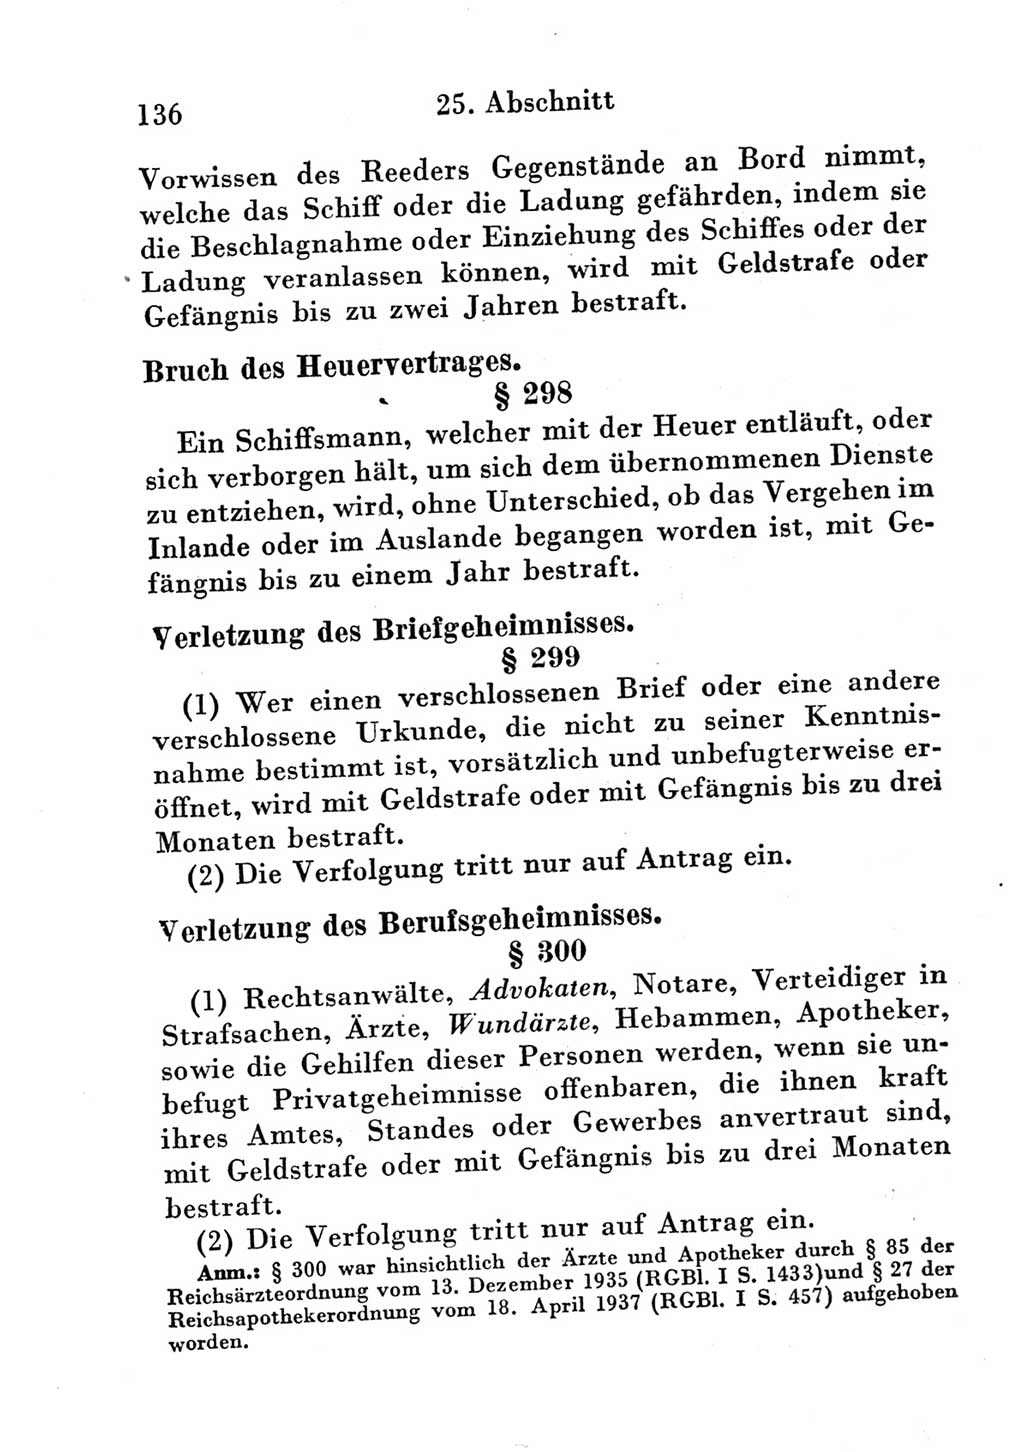 Strafgesetzbuch (StGB) und andere Strafgesetze [Deutsche Demokratische Republik (DDR)] 1951, Seite 136 (StGB Strafges. DDR 1951, S. 136)